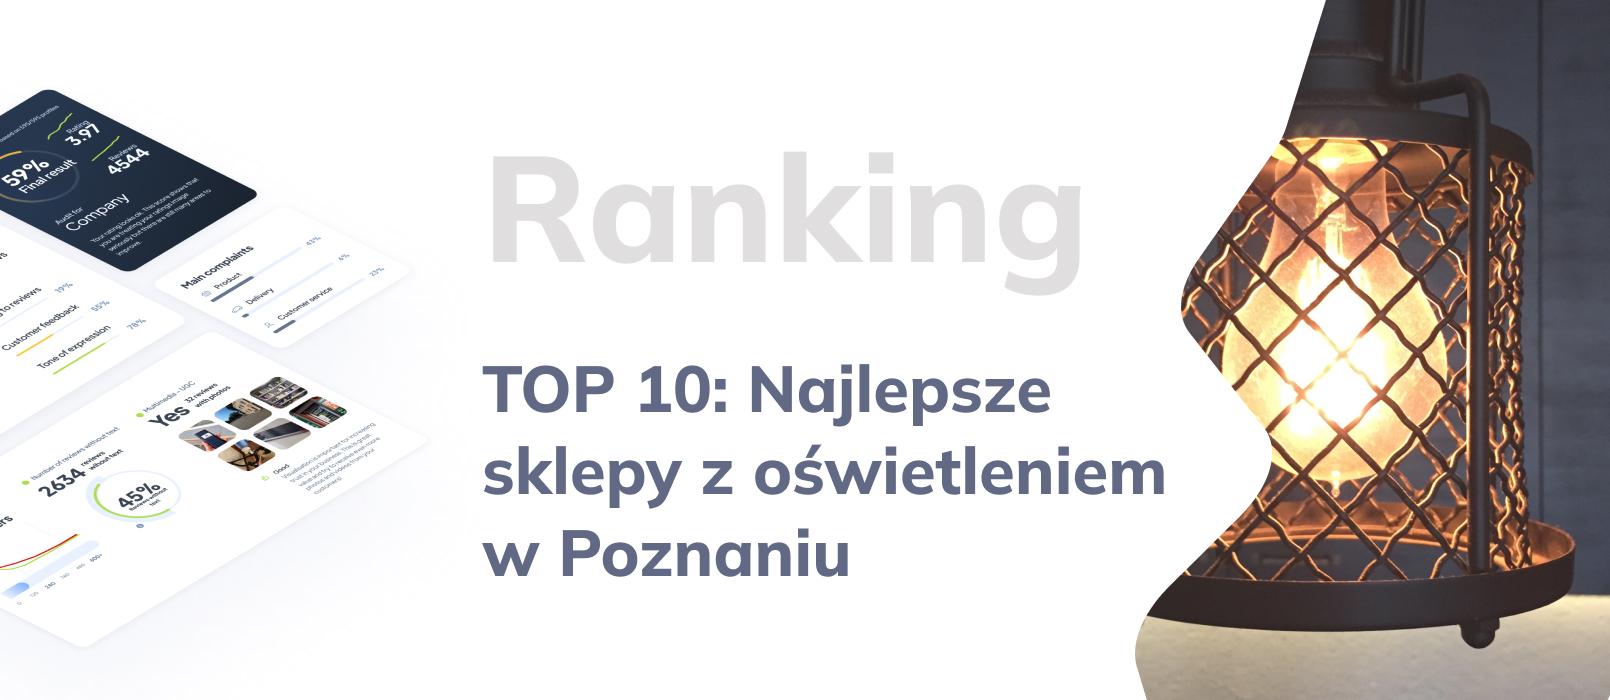 TOP 10: Ranking sklepów z oświetleniem - najlepsze salony z oświetleniem w Poznaniu